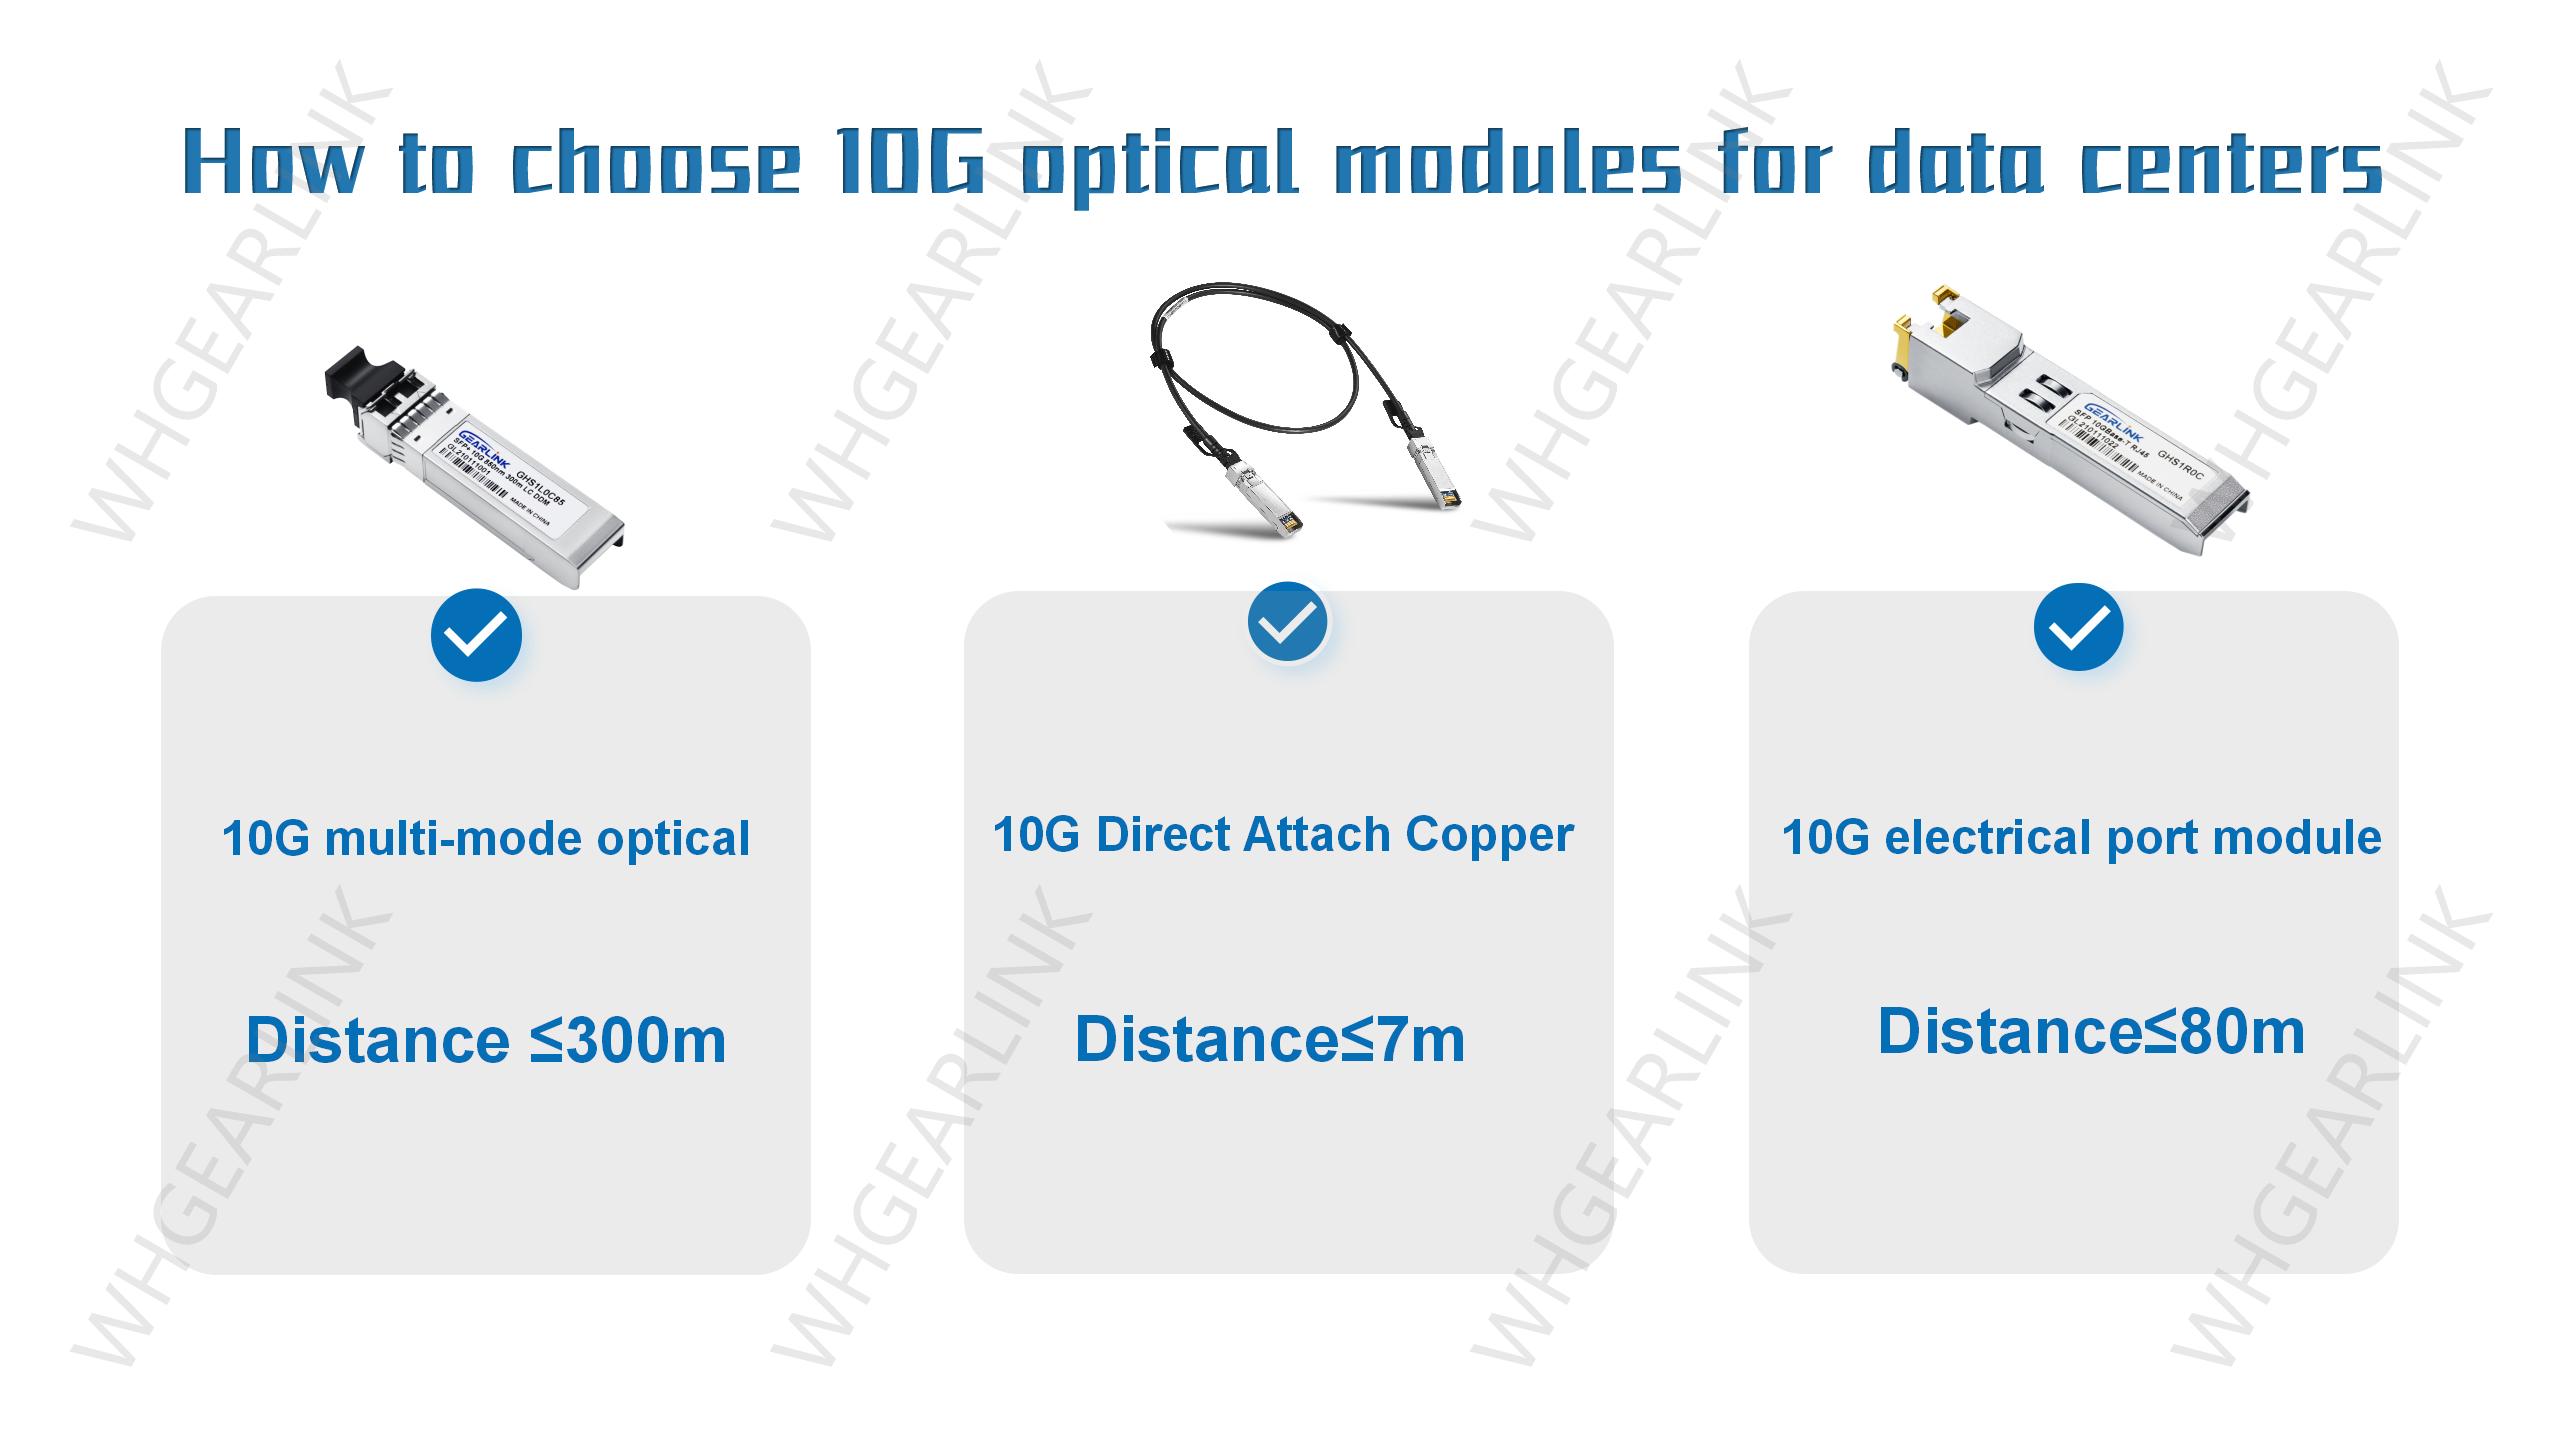 l0G_optical_modules.jpg